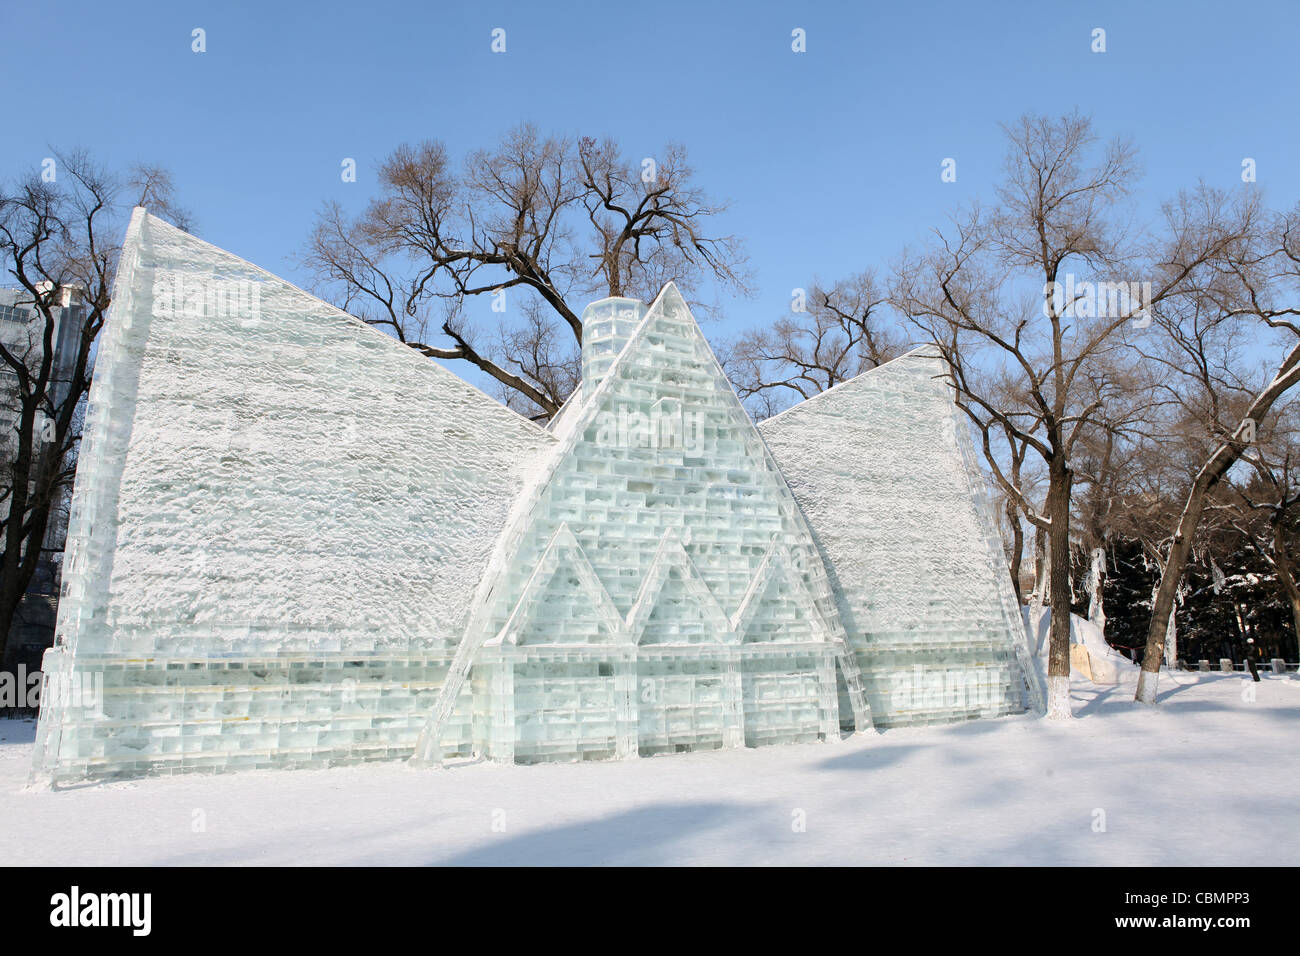 Ice and snow festival, Harbin, China, Heilongjiang Stock Photo